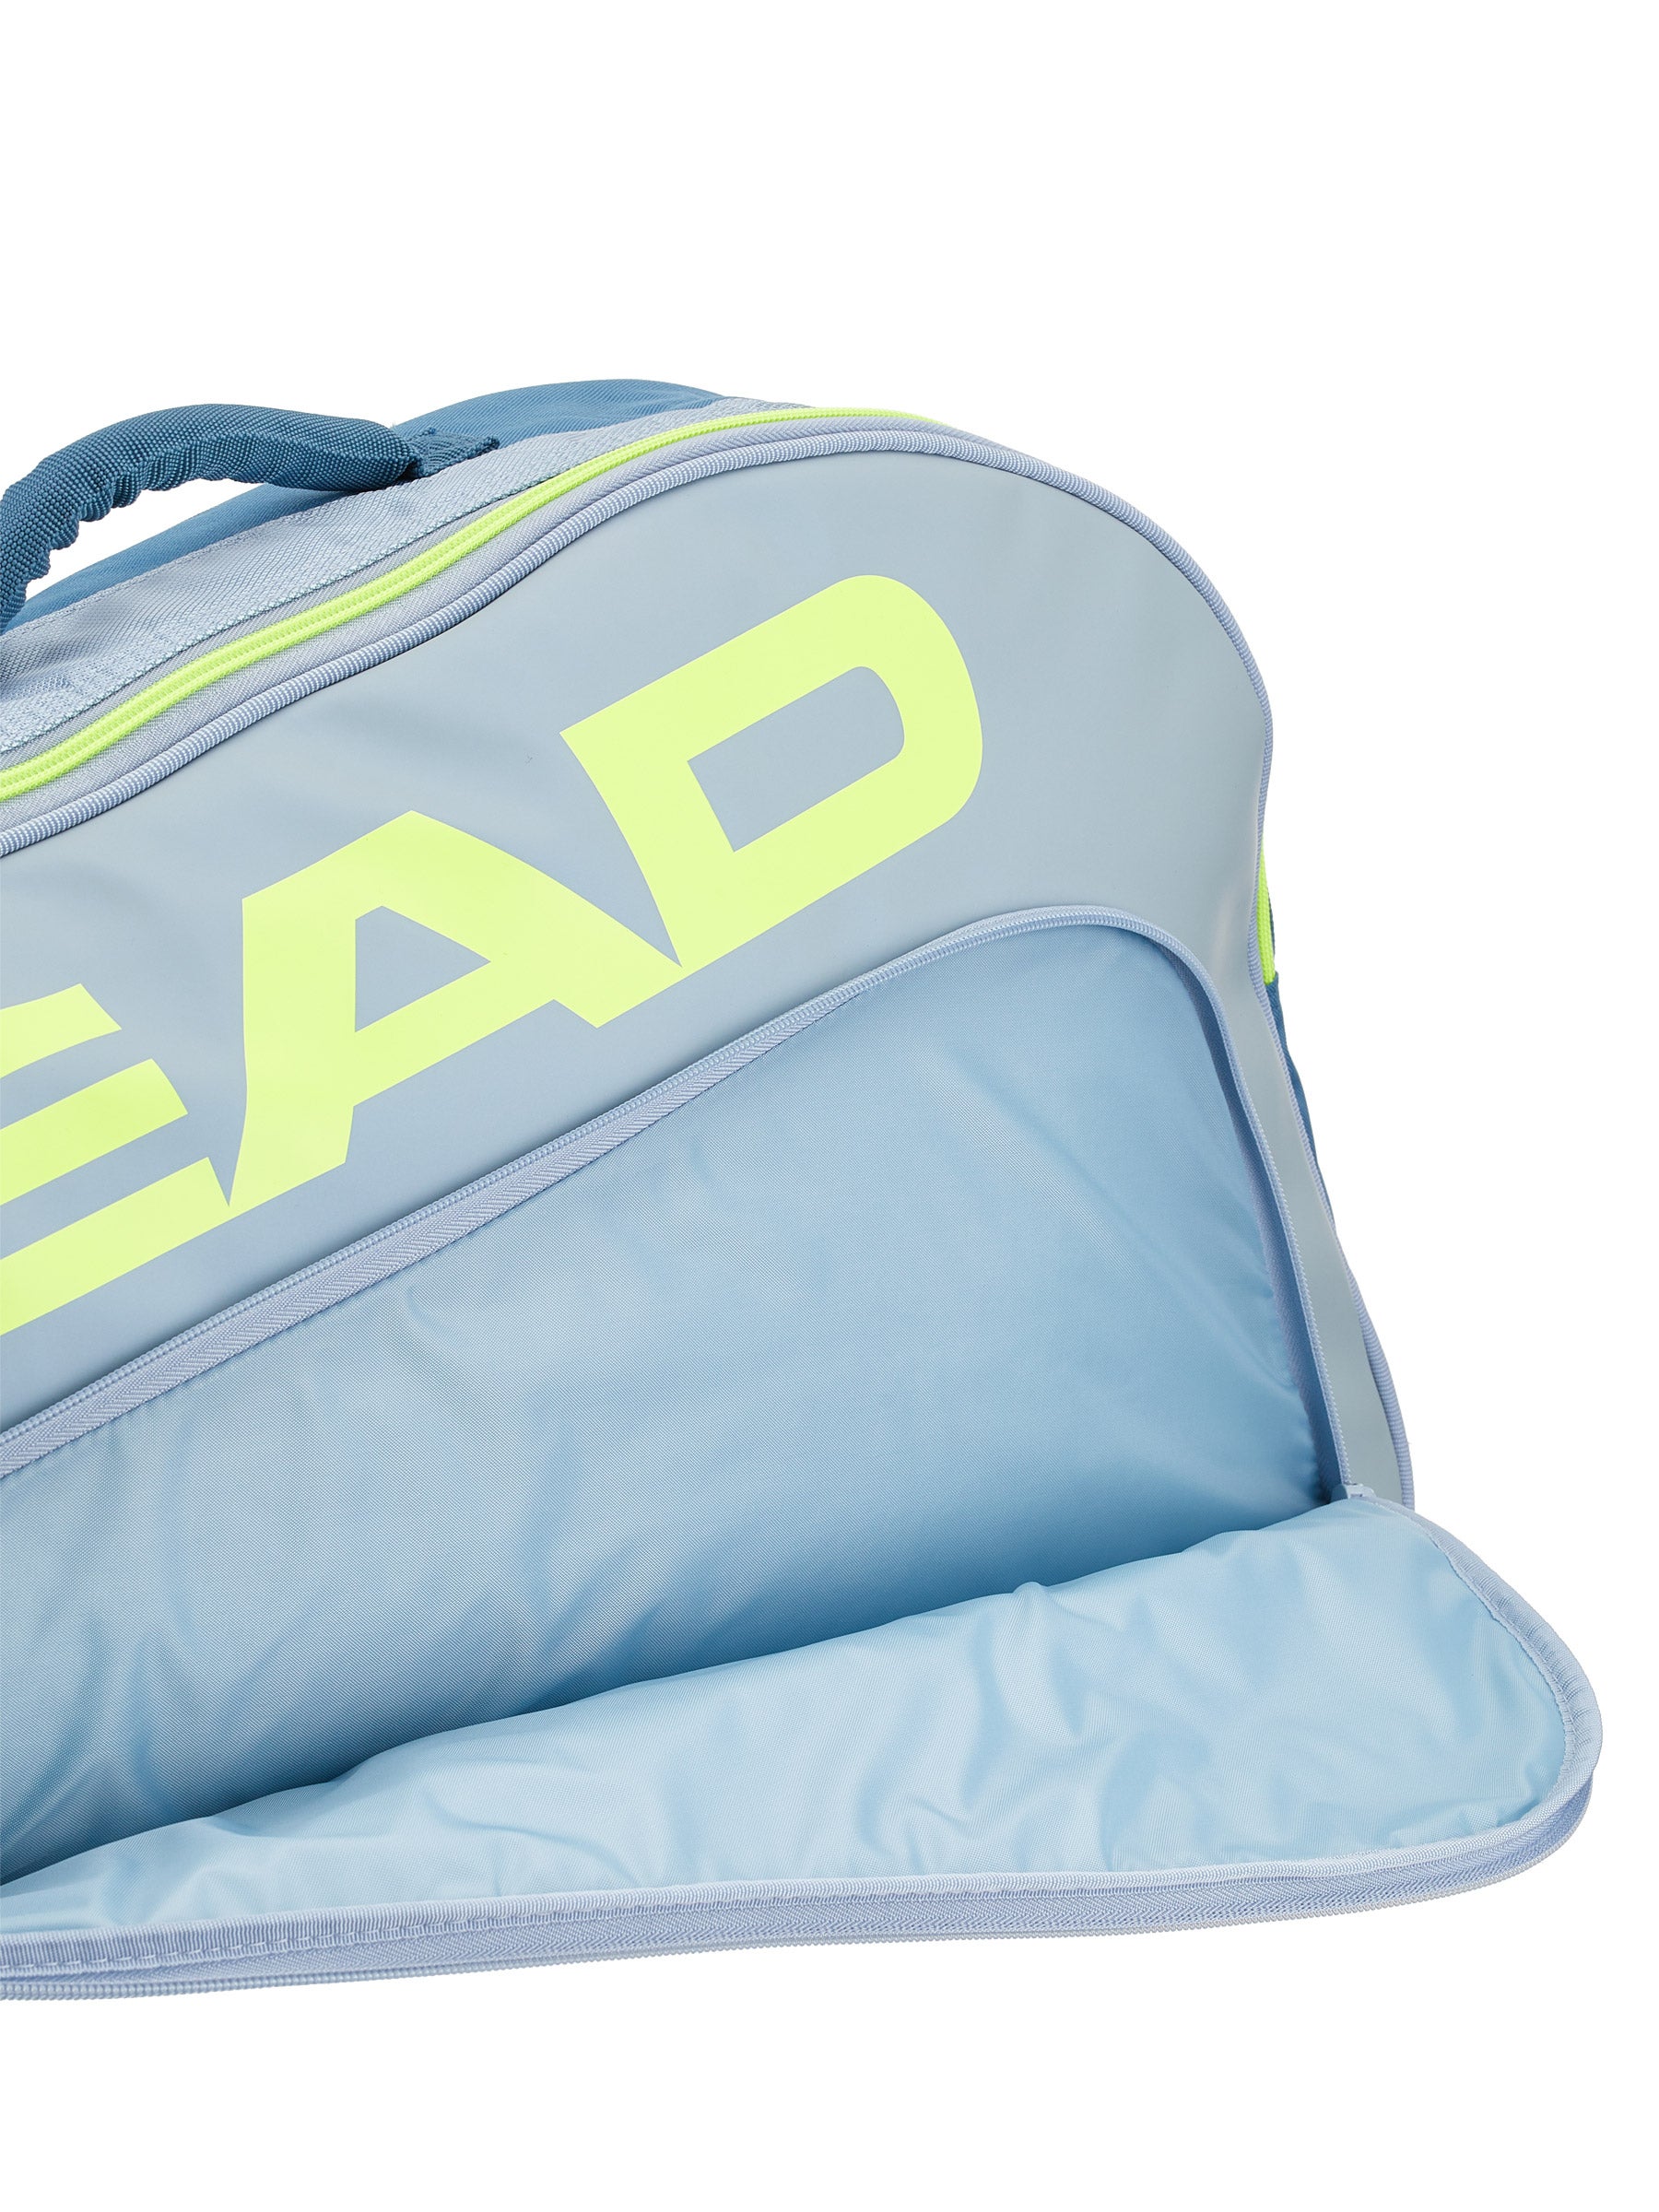 HEAD Tour Team 3R Pro Black Grey Tennis Racquet Equipment Bag Duffle Bag 